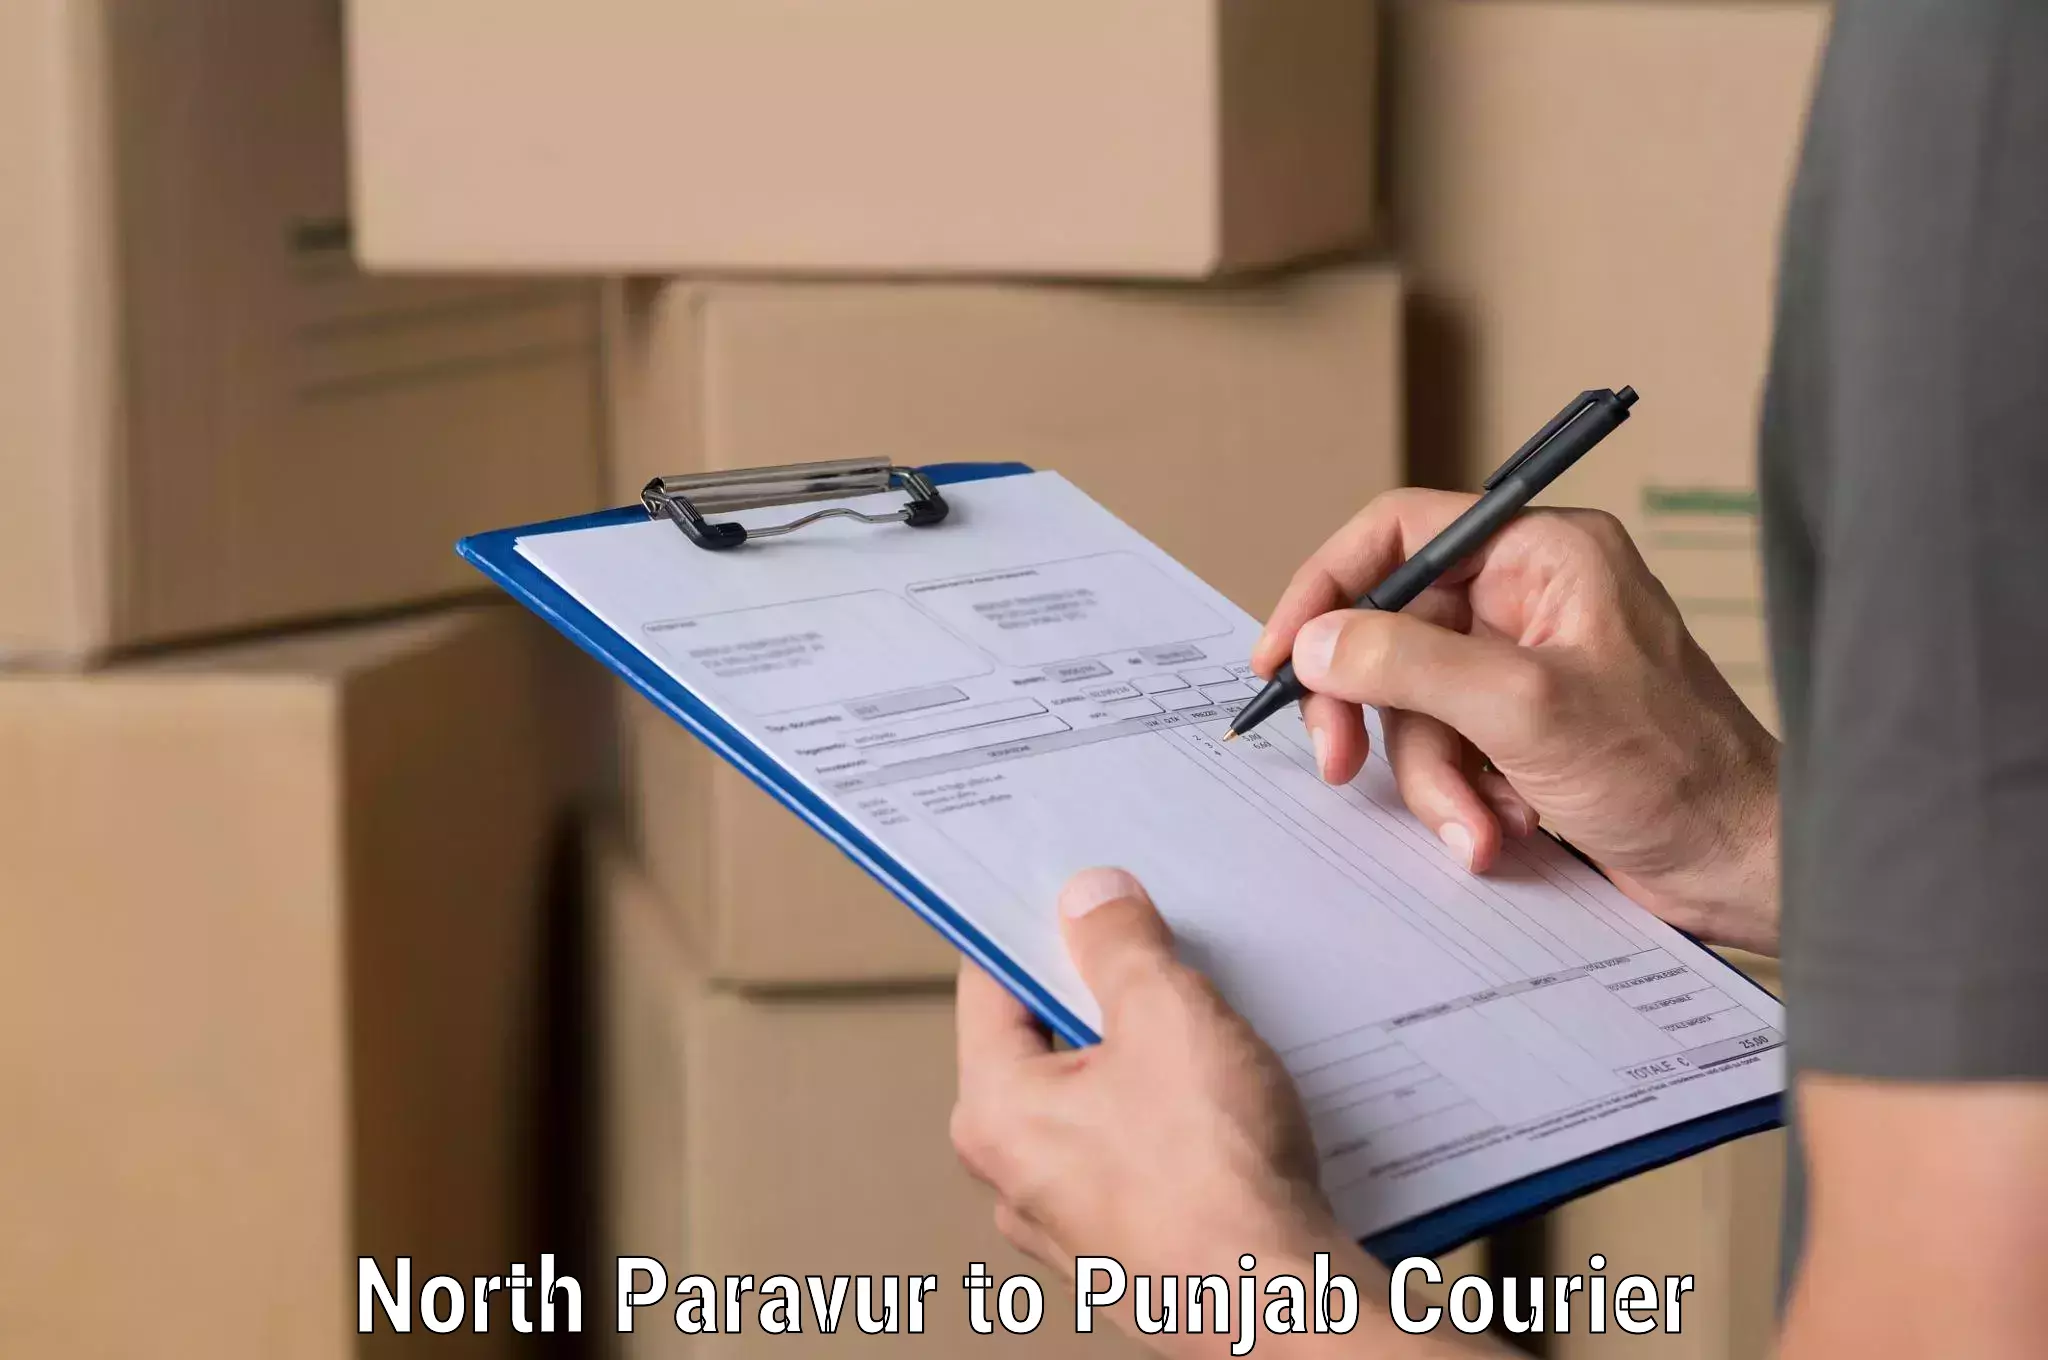 Efficient parcel service North Paravur to Pathankot